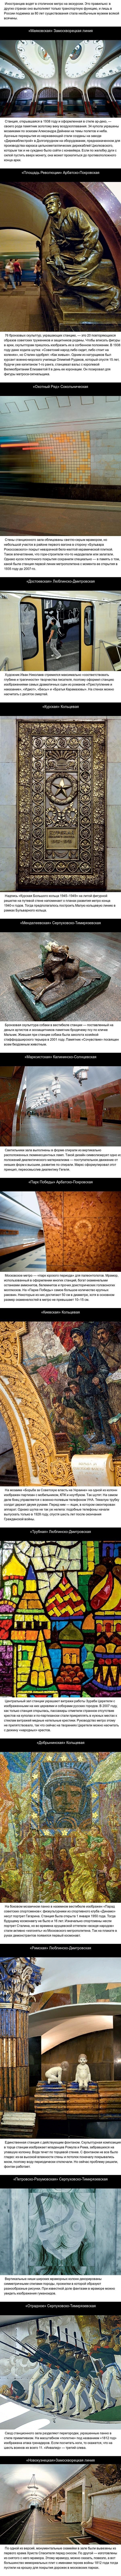 15 удивительных фрагментов московского метро